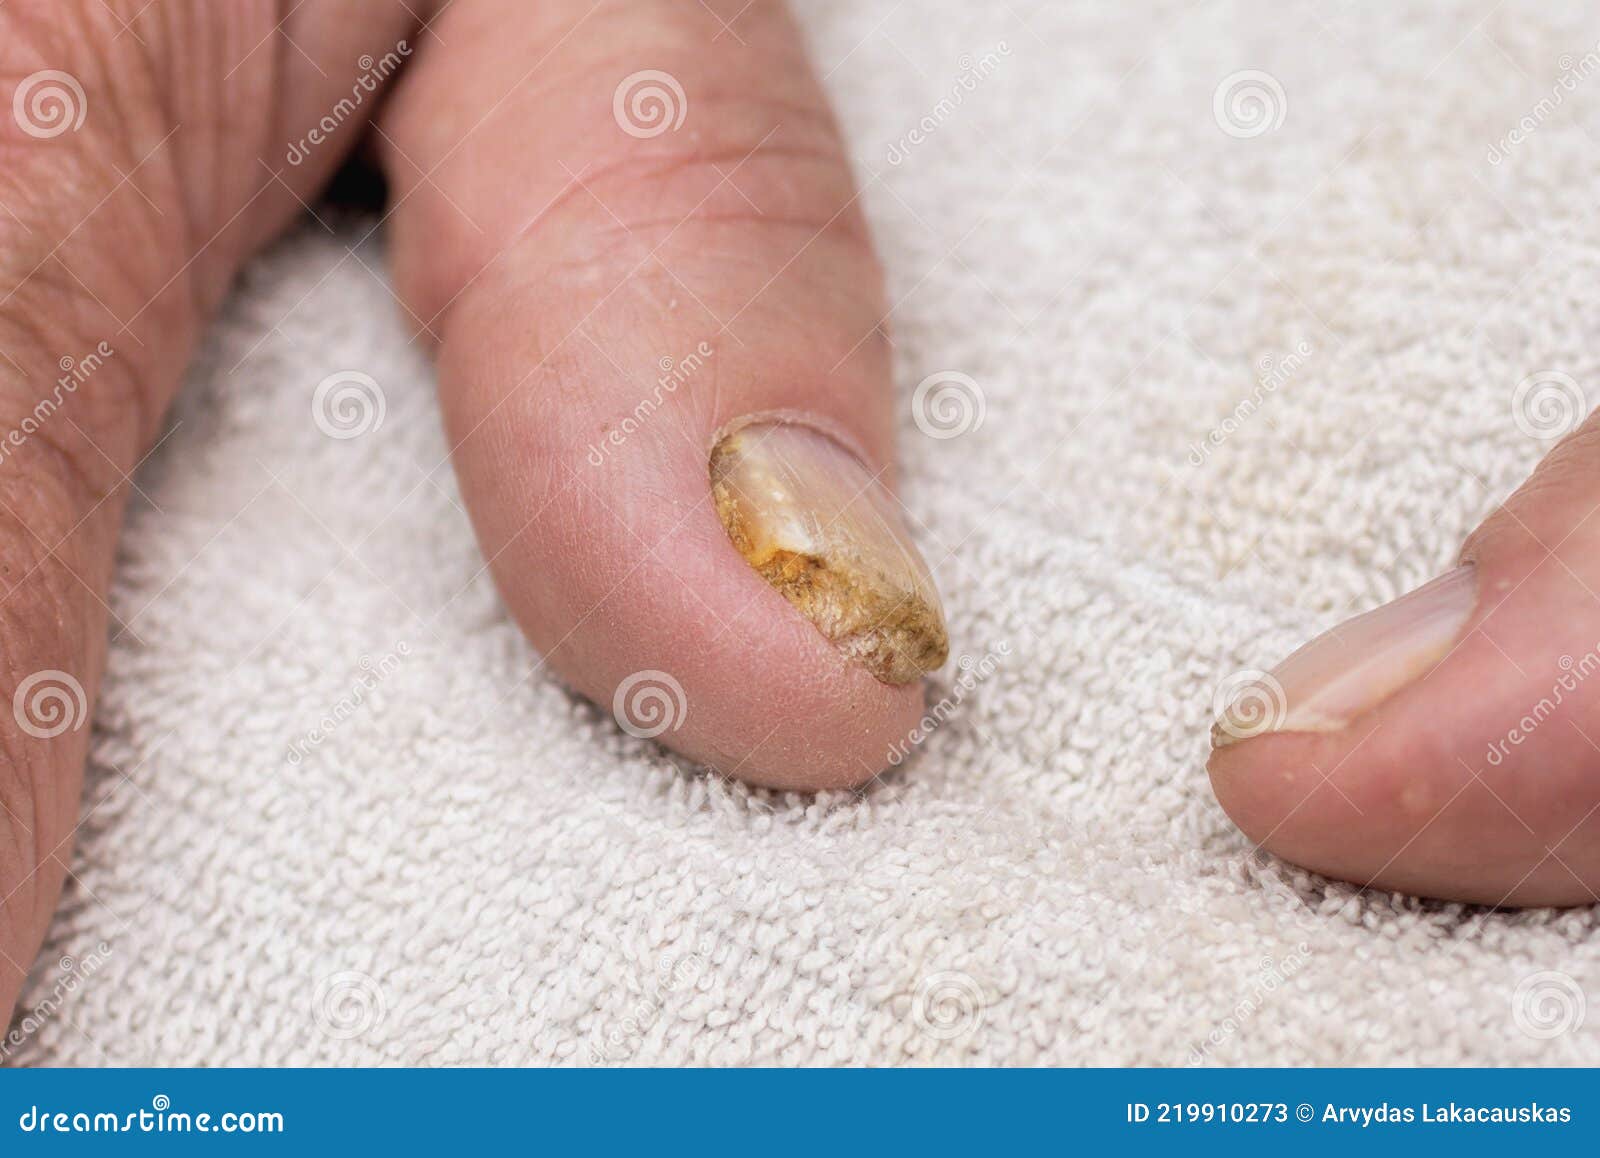 Pro Anti Fungal Nail Treatment Repair Finger Toe Care Nail Fungus Liquid |  eBay